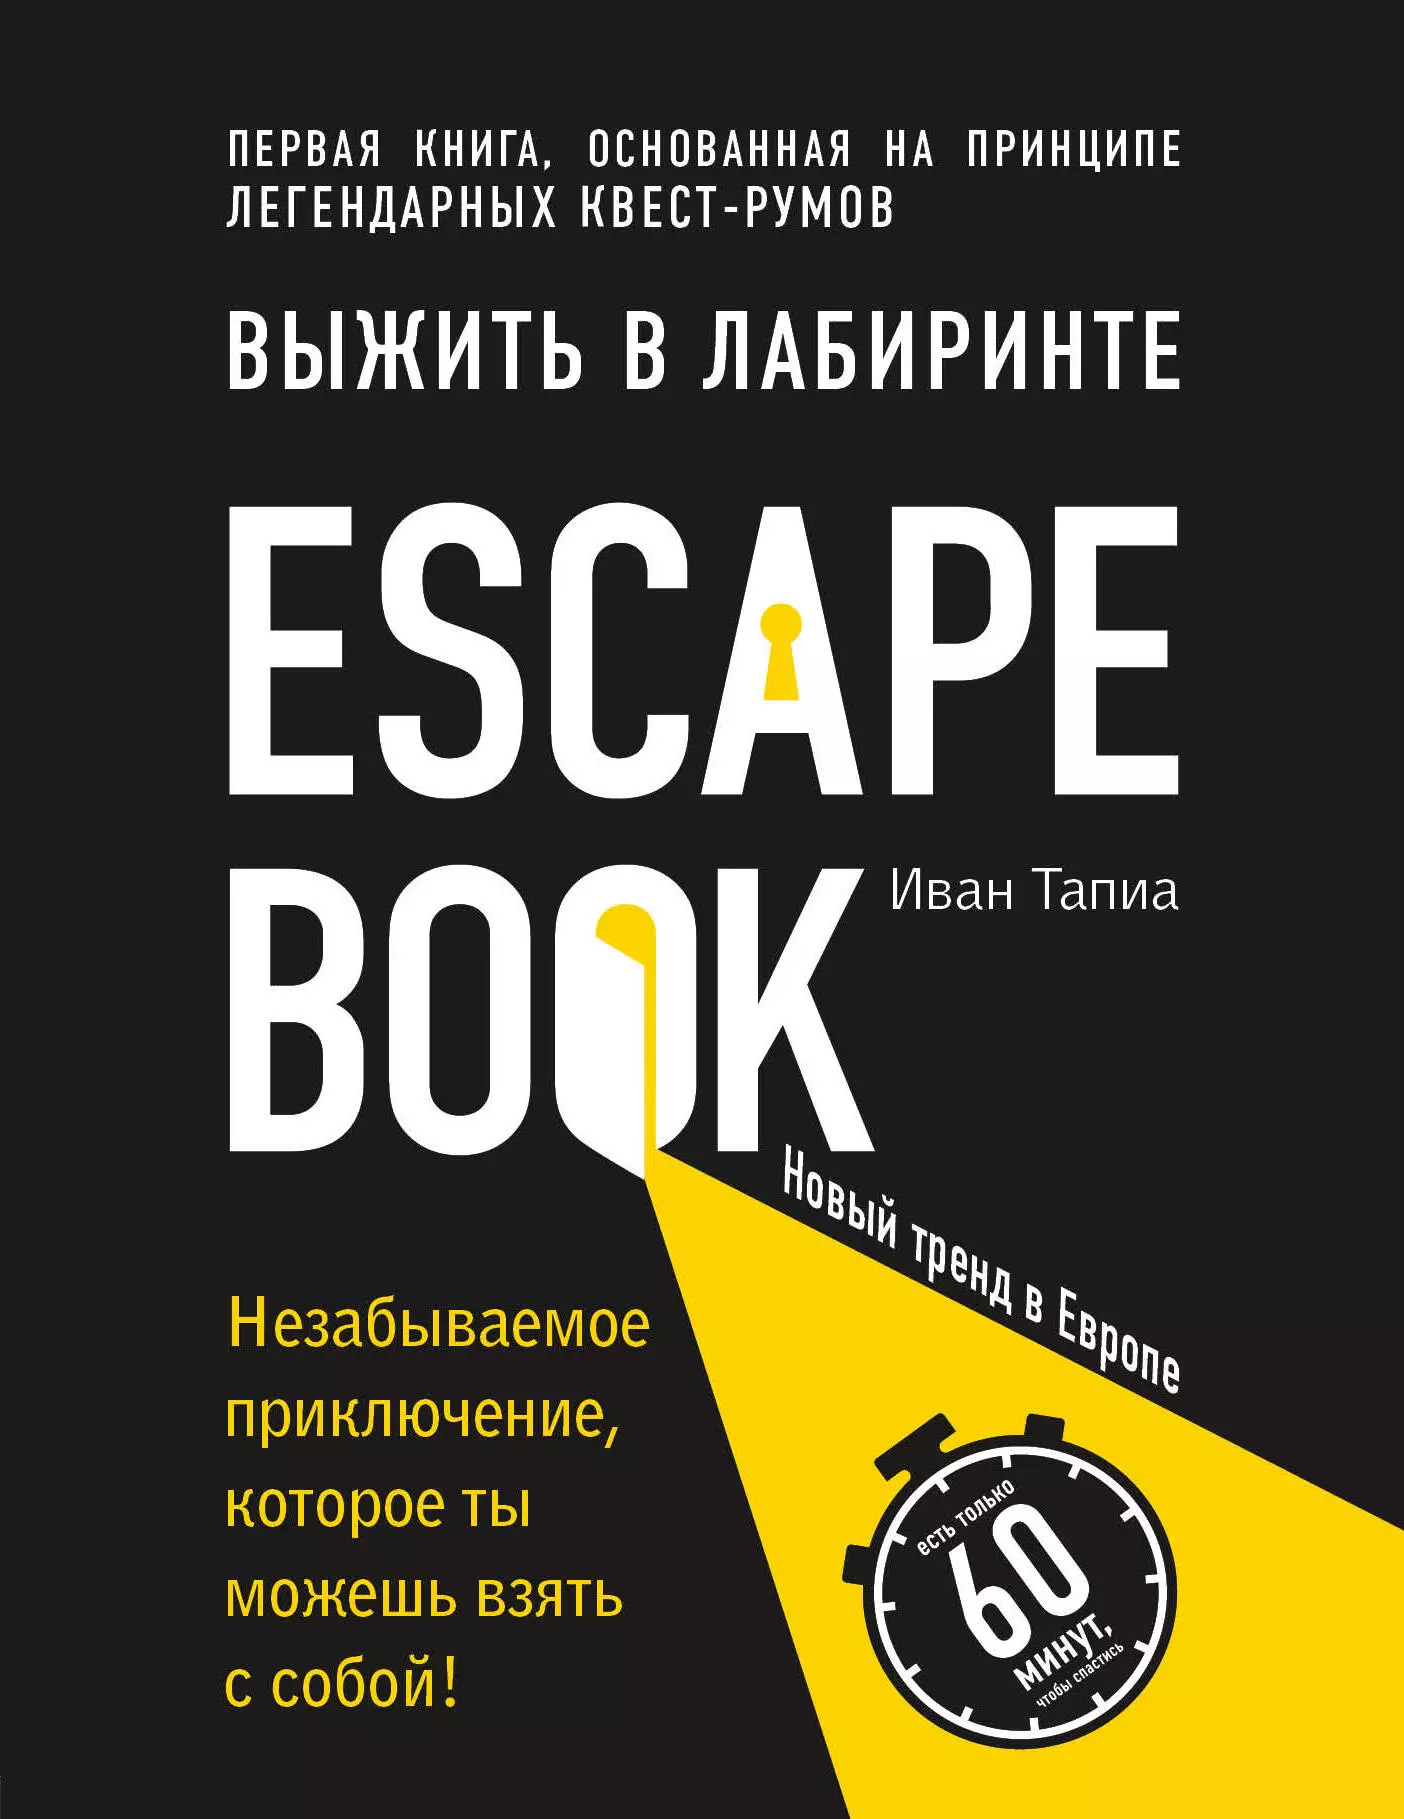 Тапиа Иван, Расторгуева М.А. - Escape Book: выжить в лабиринте. Первая книга, основанная на принципе легендарных квест-румов